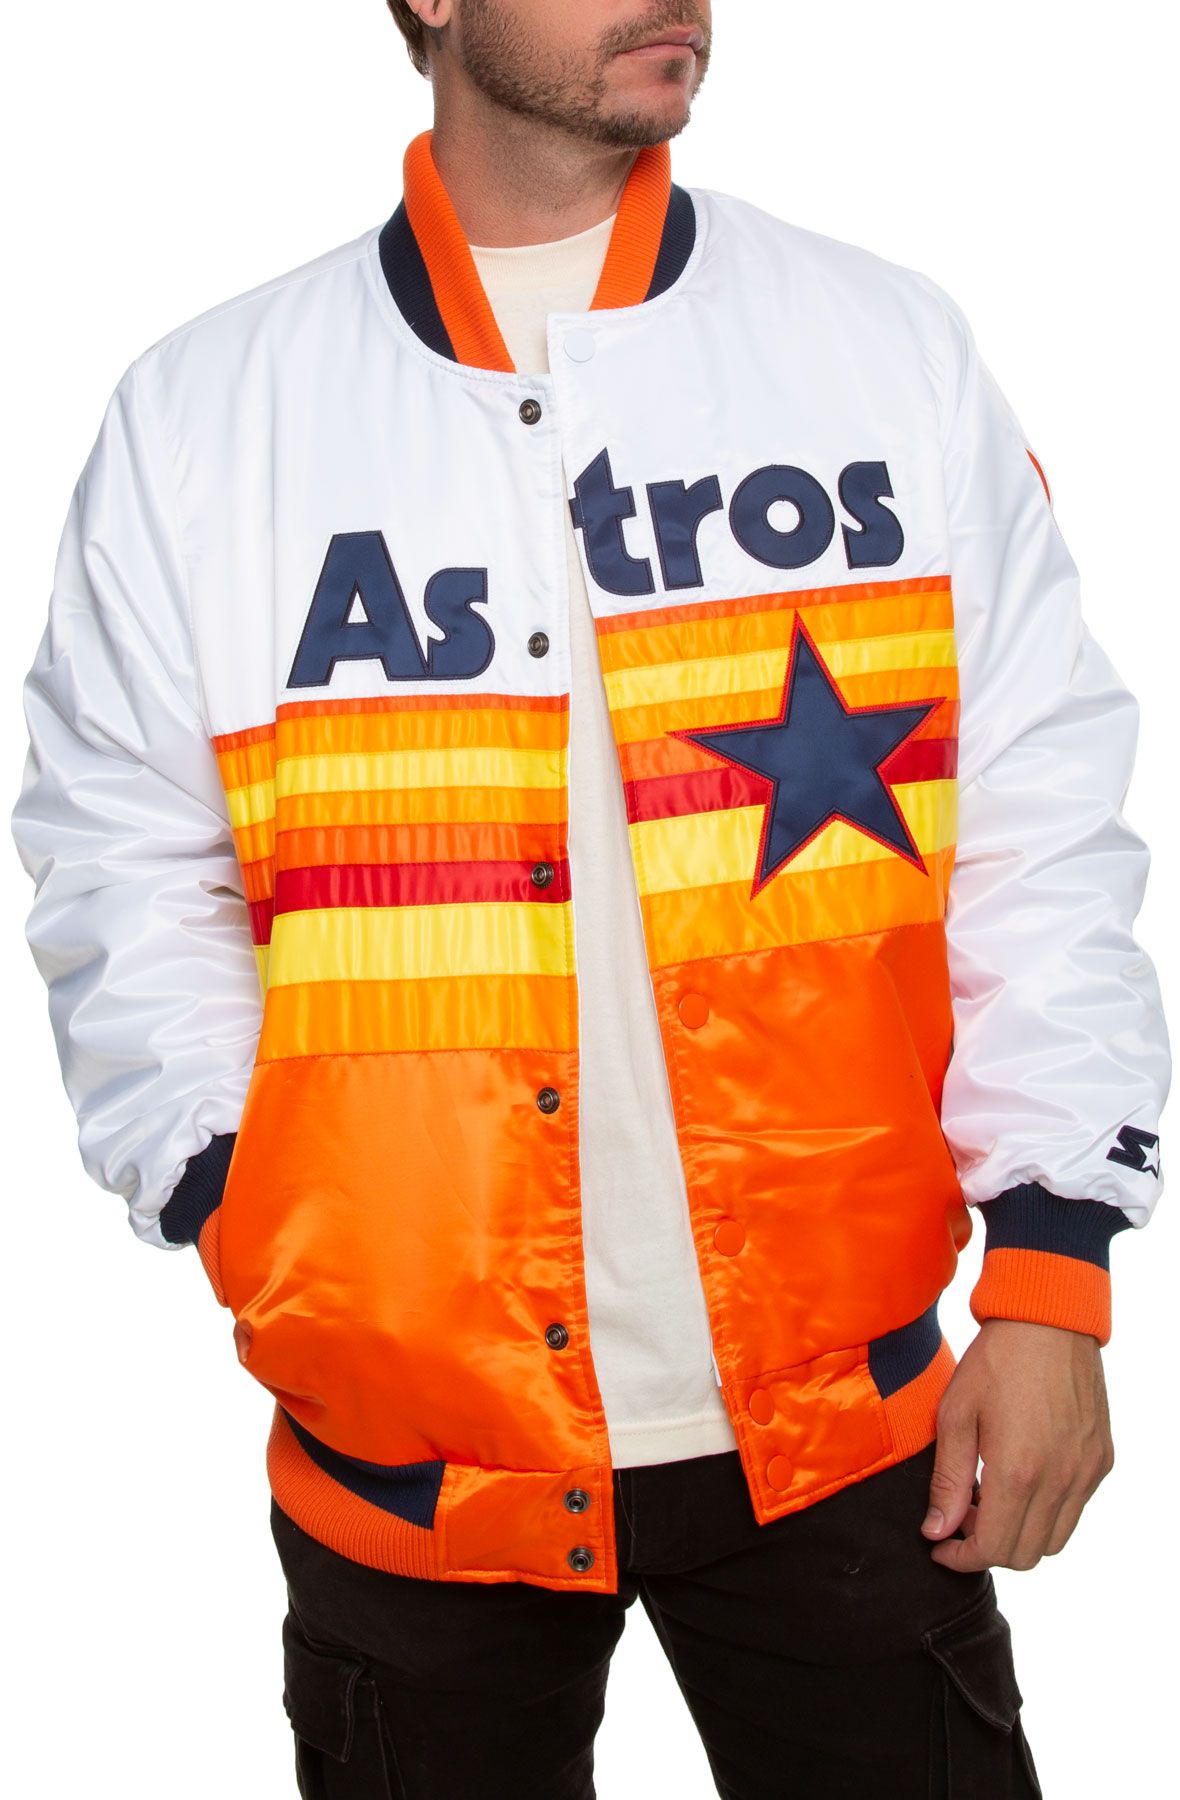 astros retro jacket